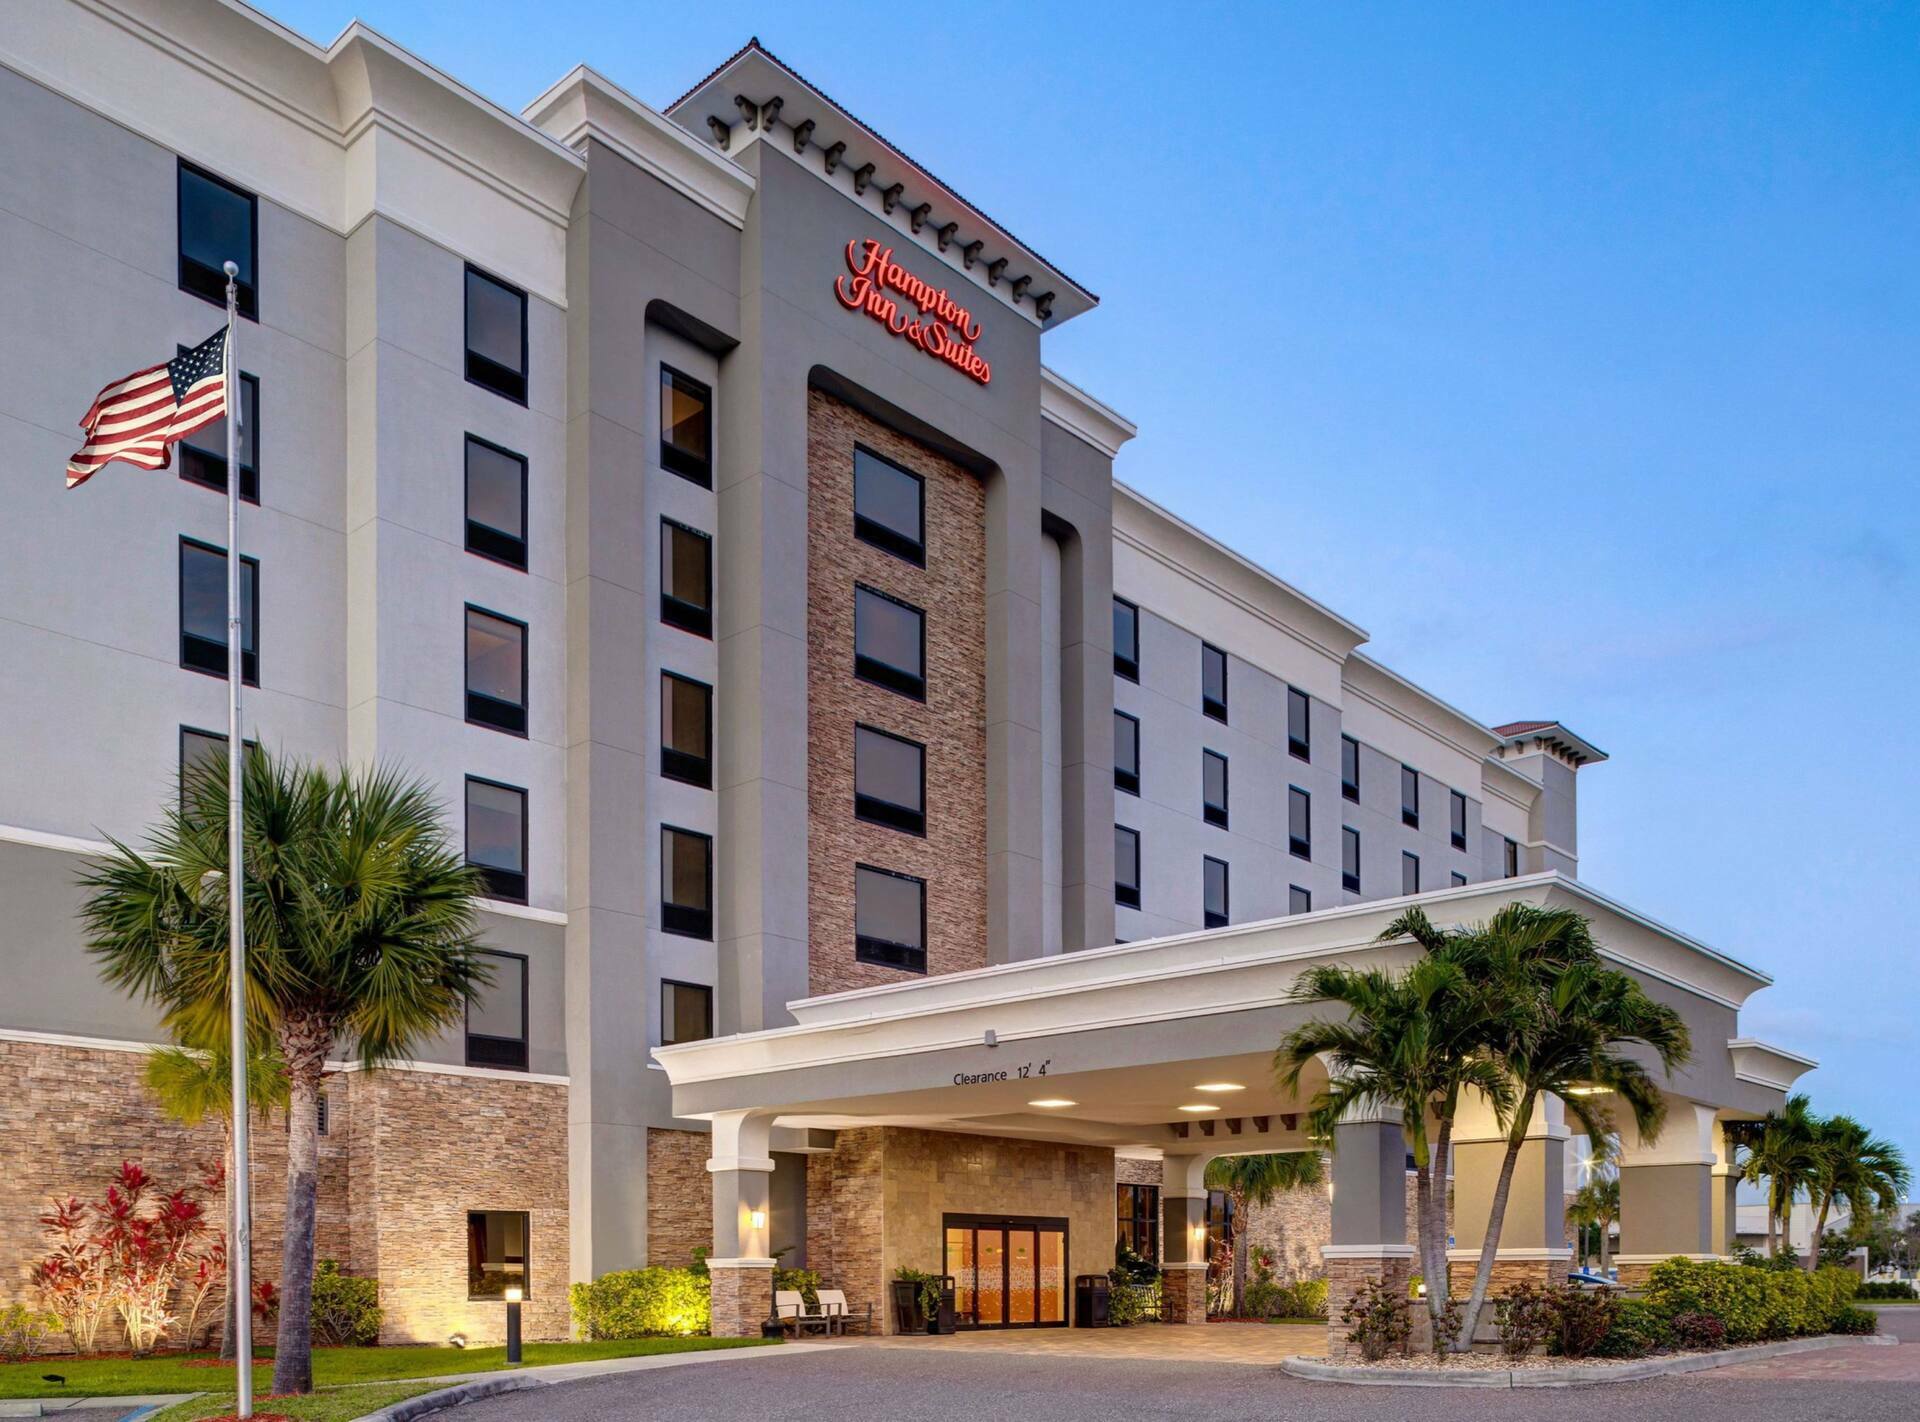 Photo of Hampton Inn & Suites Tampa Northwest/Oldsmar, Oldsmar, FL